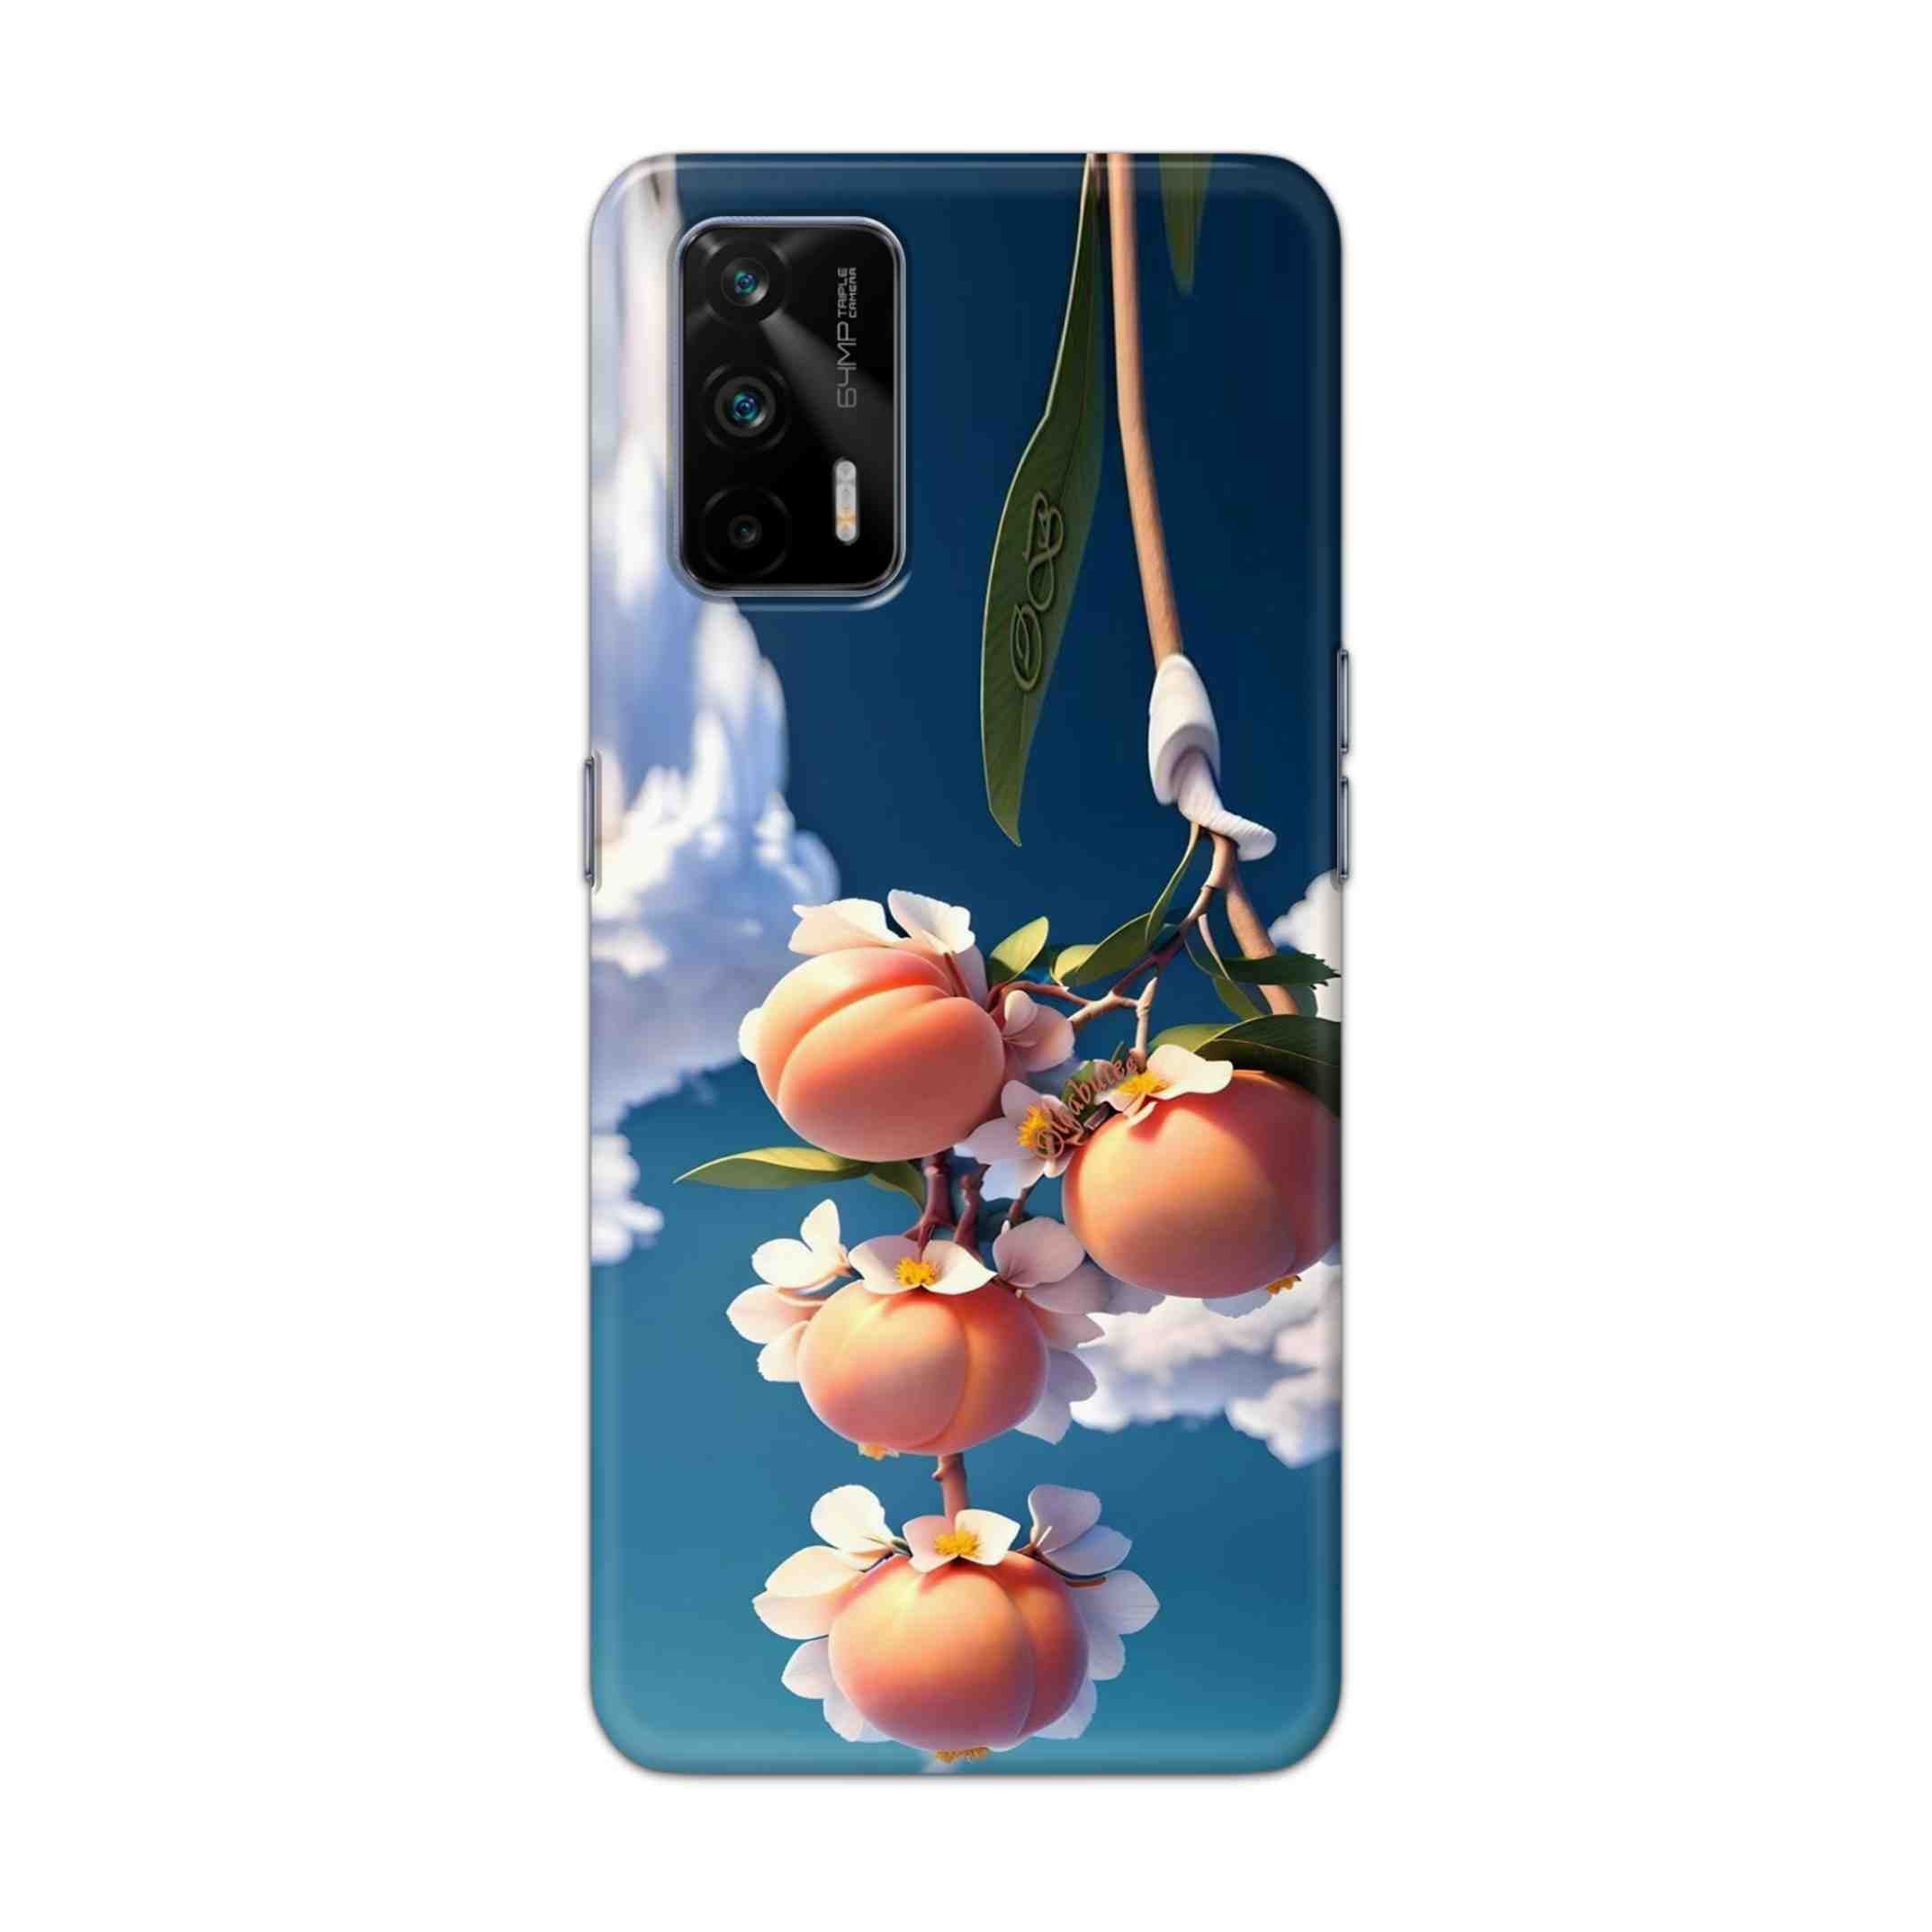 Buy Fruit Hard Back Mobile Phone Case Cover For Realme GT 5G Online